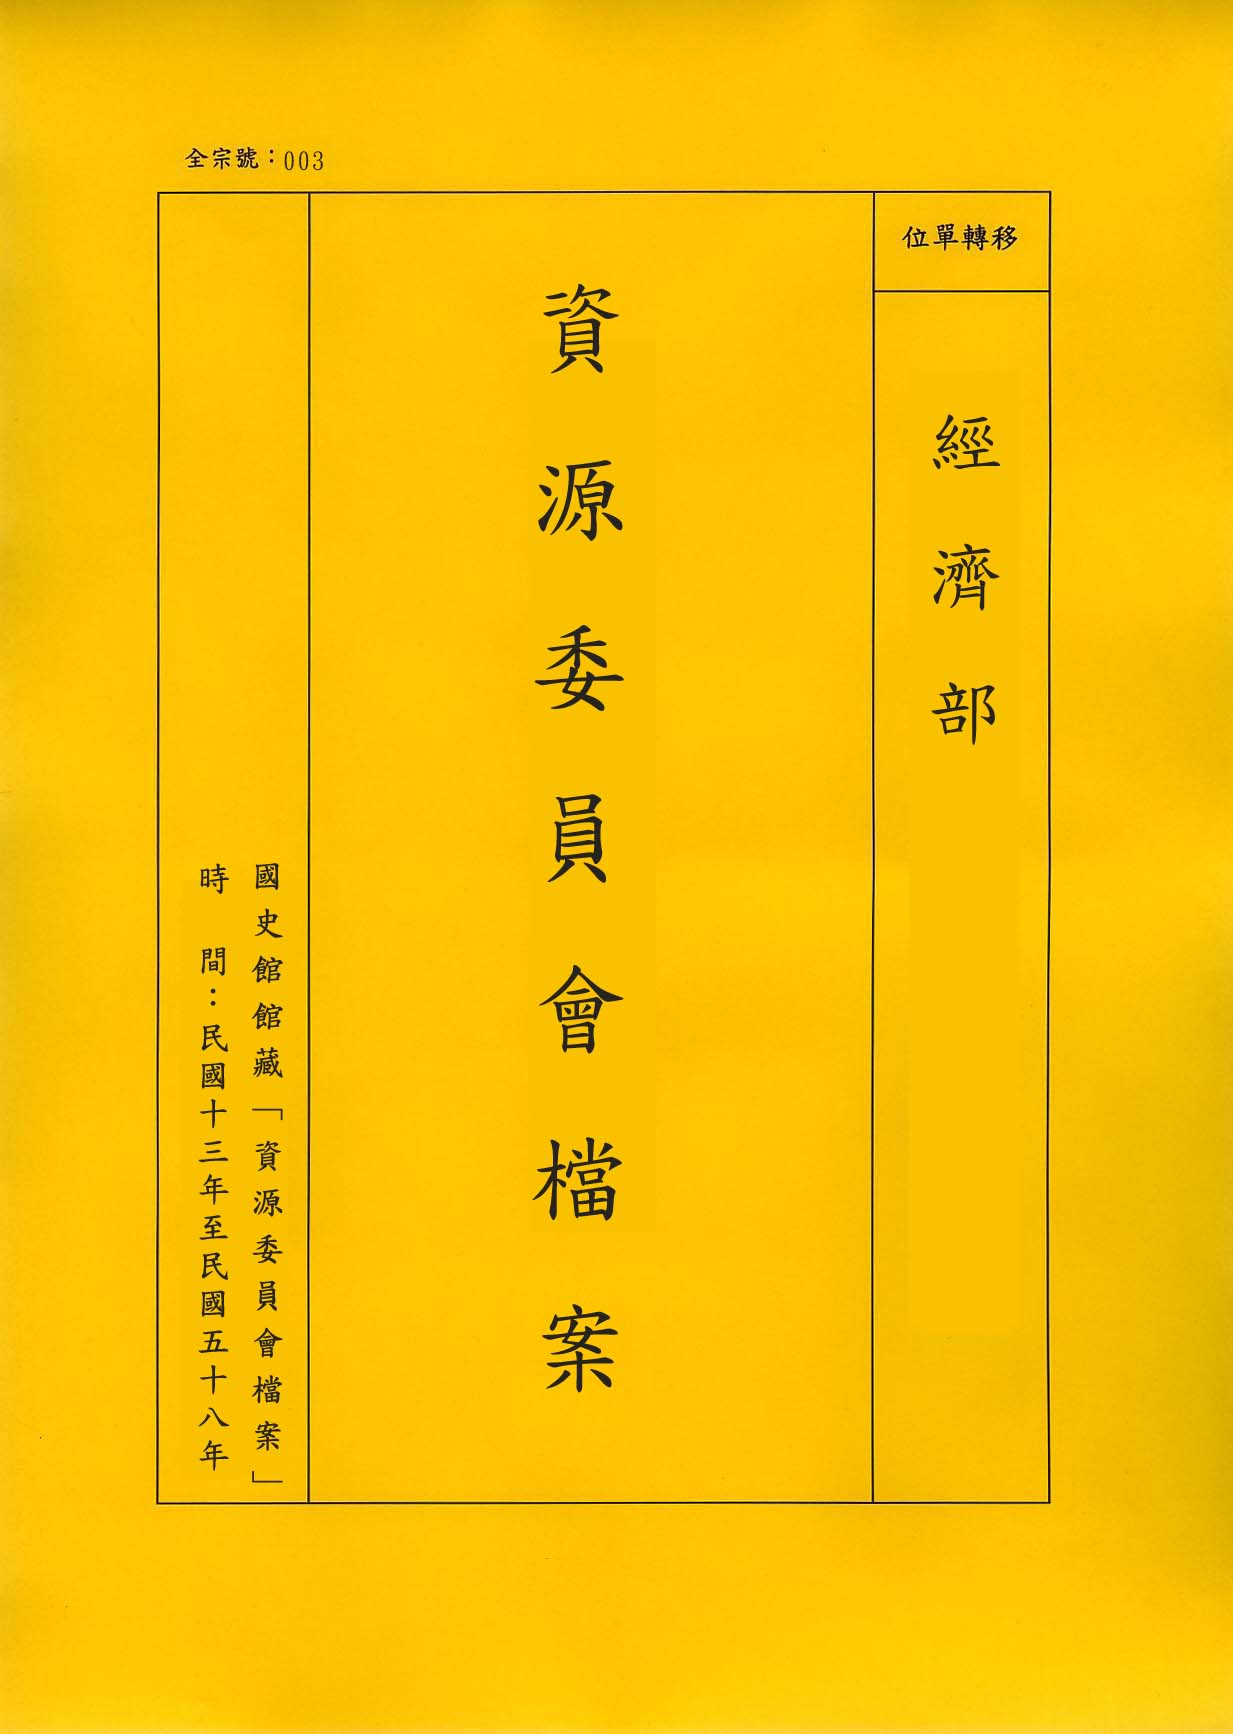 卷名:飲食品類工廠登記卡片─河北天津(003-010304-0292)